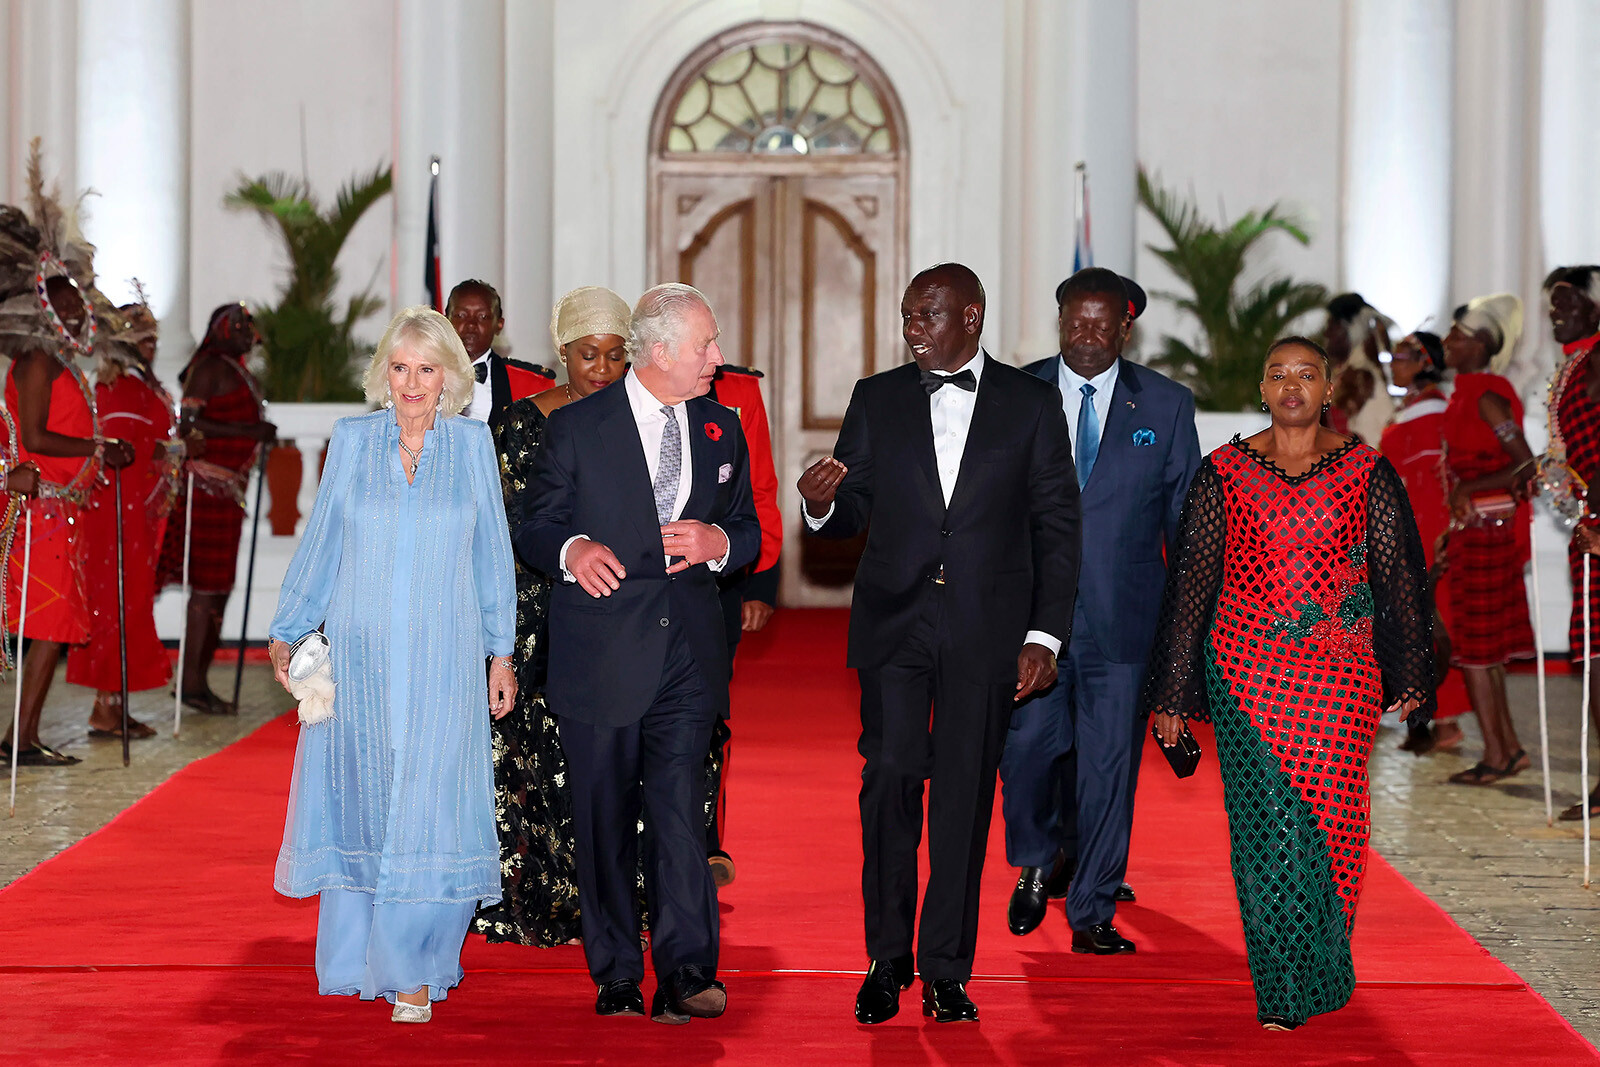 Королева Камилла, король Карл III, Уильям Руто, президент Республики Кения, и Рэйчел Руто, первая леди Республики Кения, входят в Государственный дом на государственный банкет 31 октября